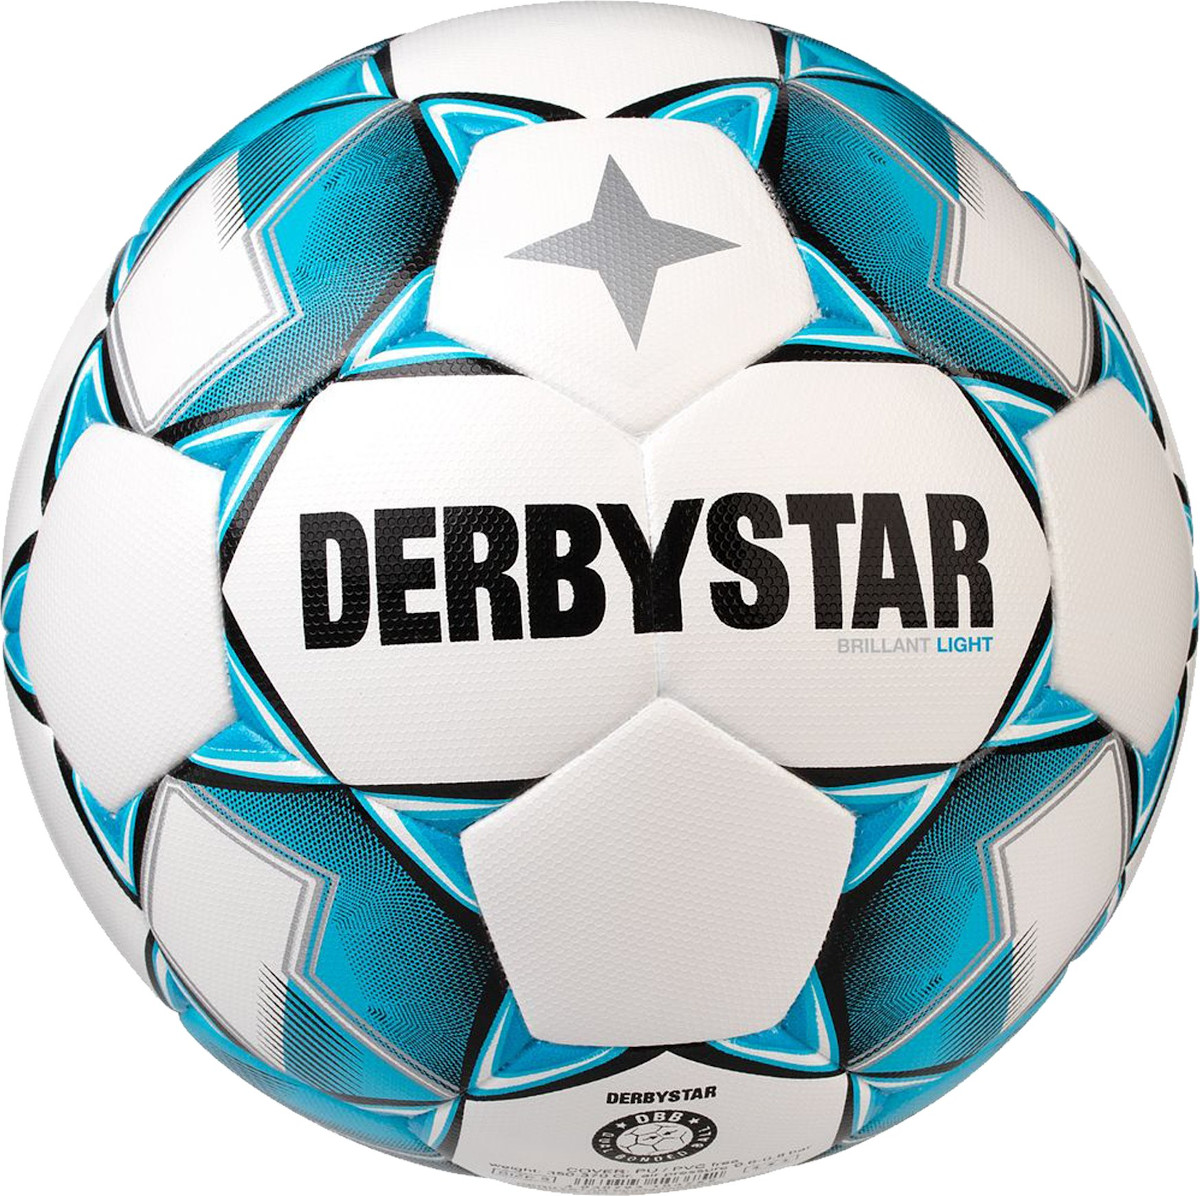 Žoga Derbystar Brilliant Light DB v20 350g training ball